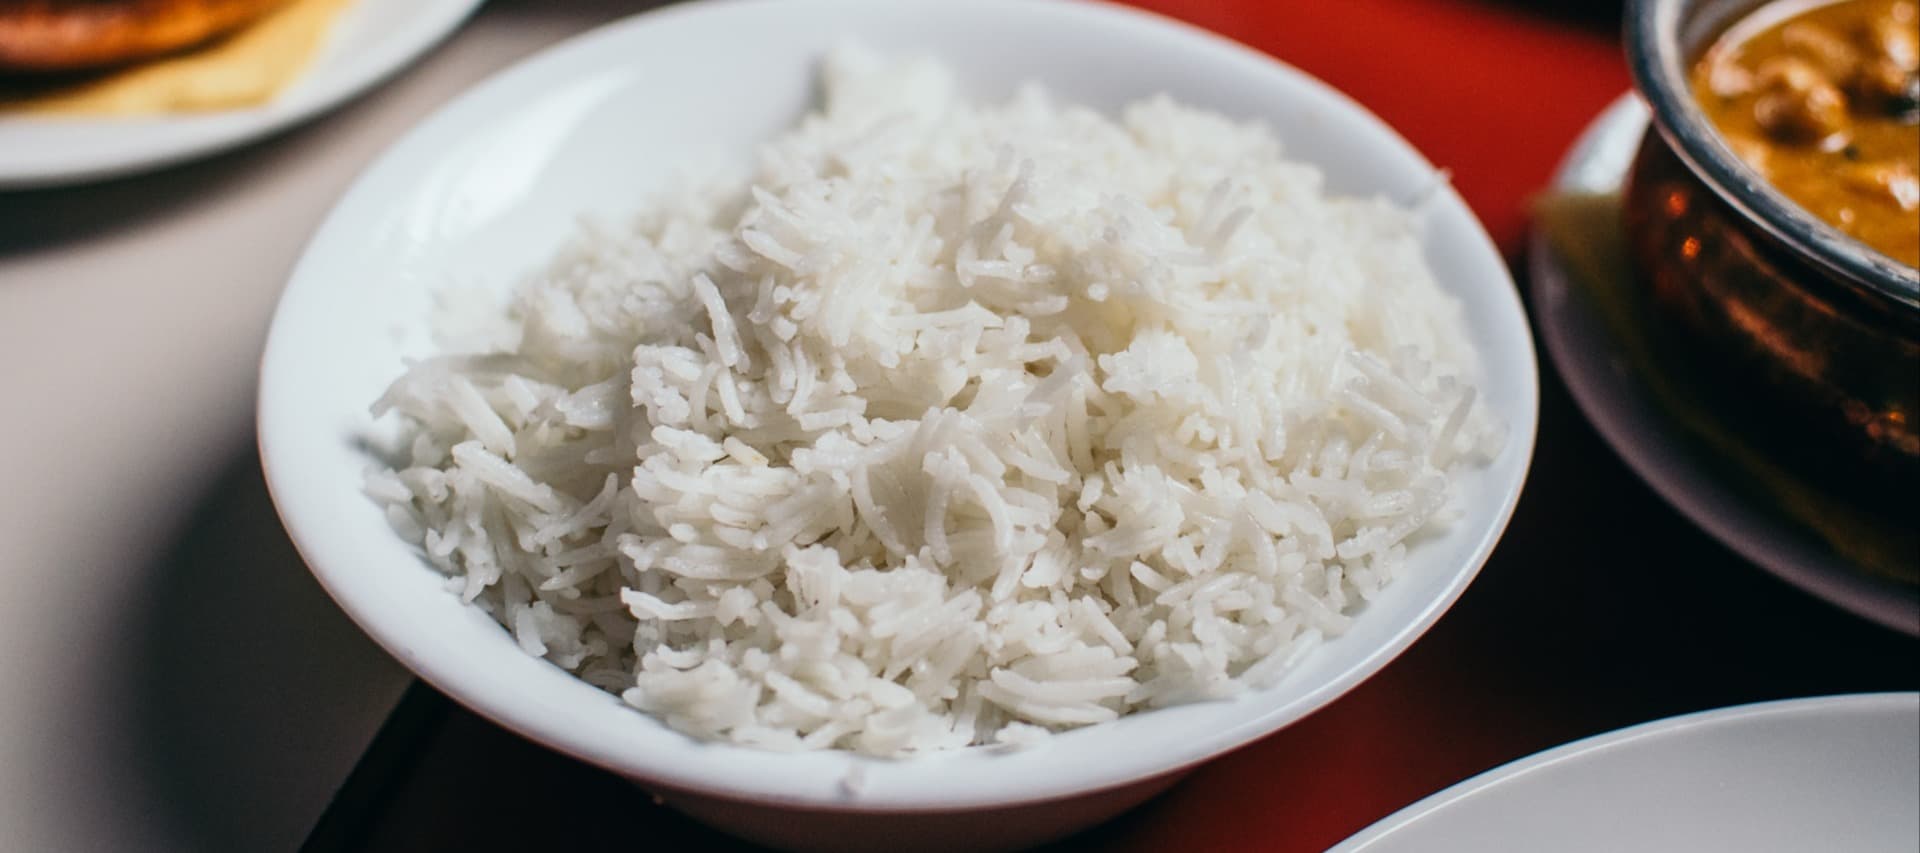 Фото новости: "Аналитики спрогнозировали самый большой дефицит риса в мире за последние 20 лет"